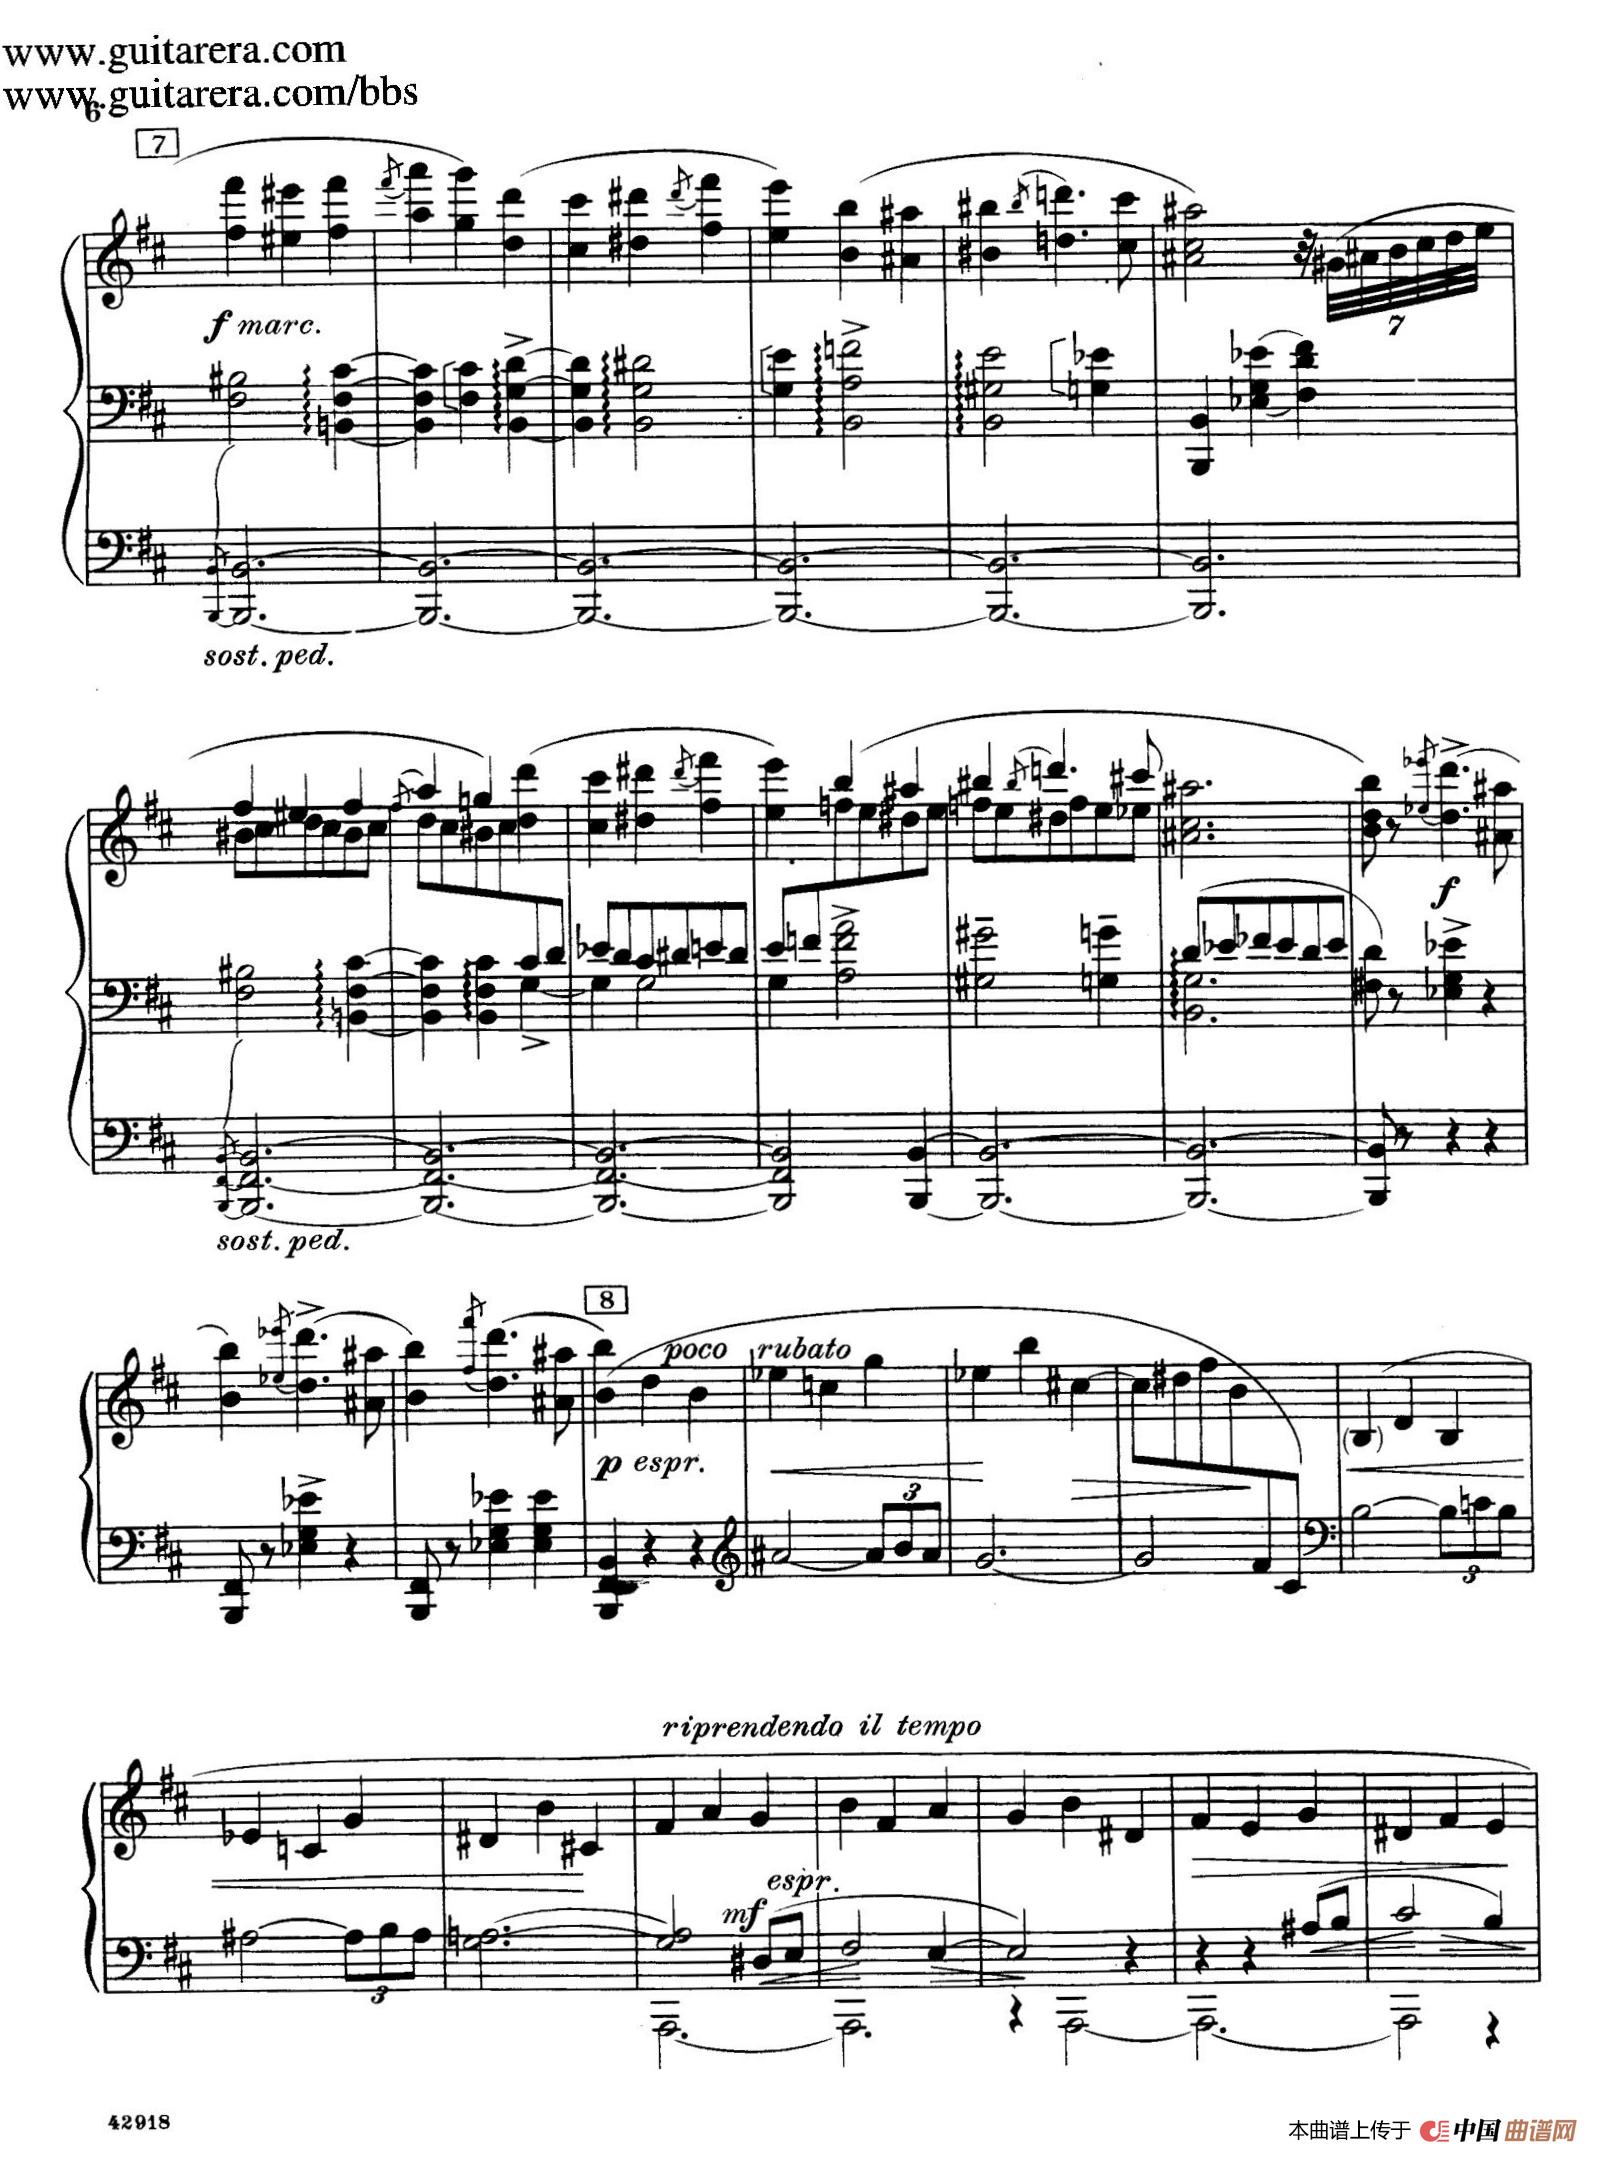 《Souvenirs Op.28》钢琴曲谱图分享